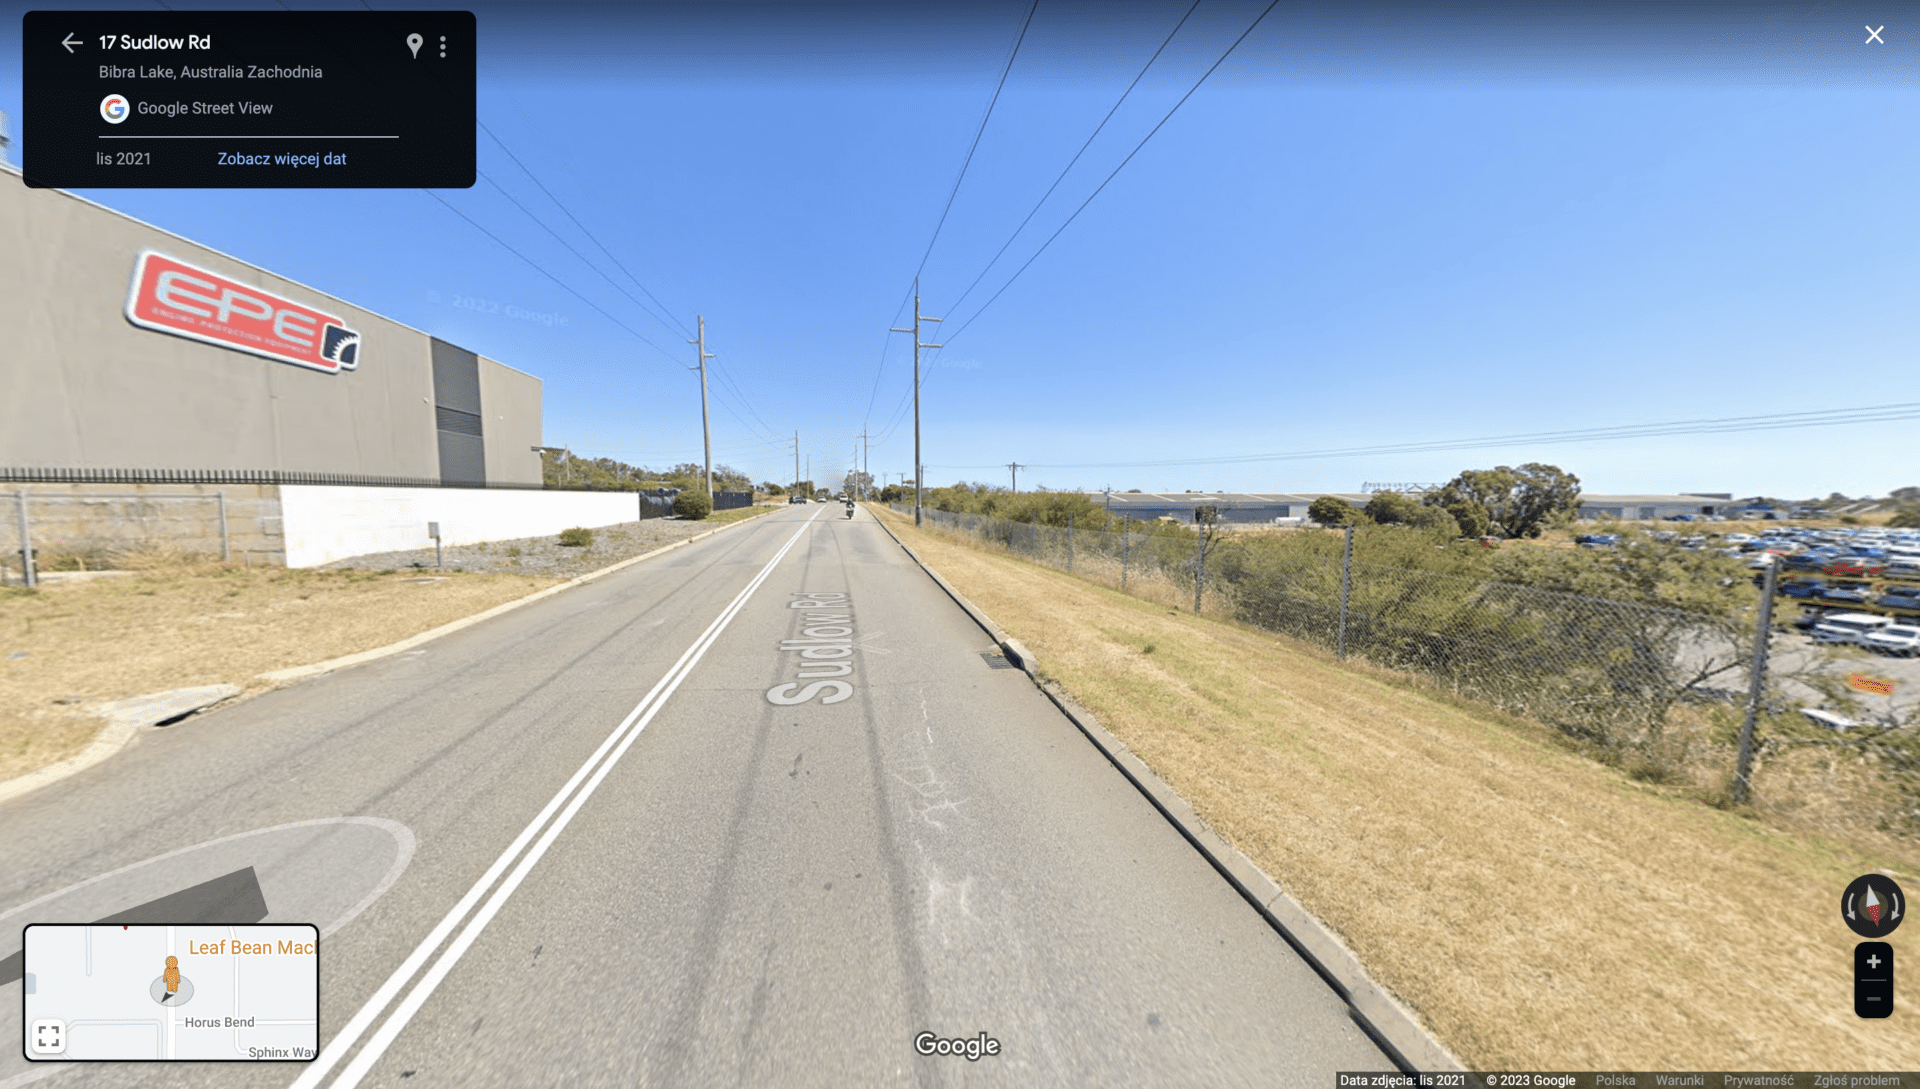 Zrzut ekranu widoku z Google Street View obok miejsca zdarzenia z widocznym tym samym budynkiem.